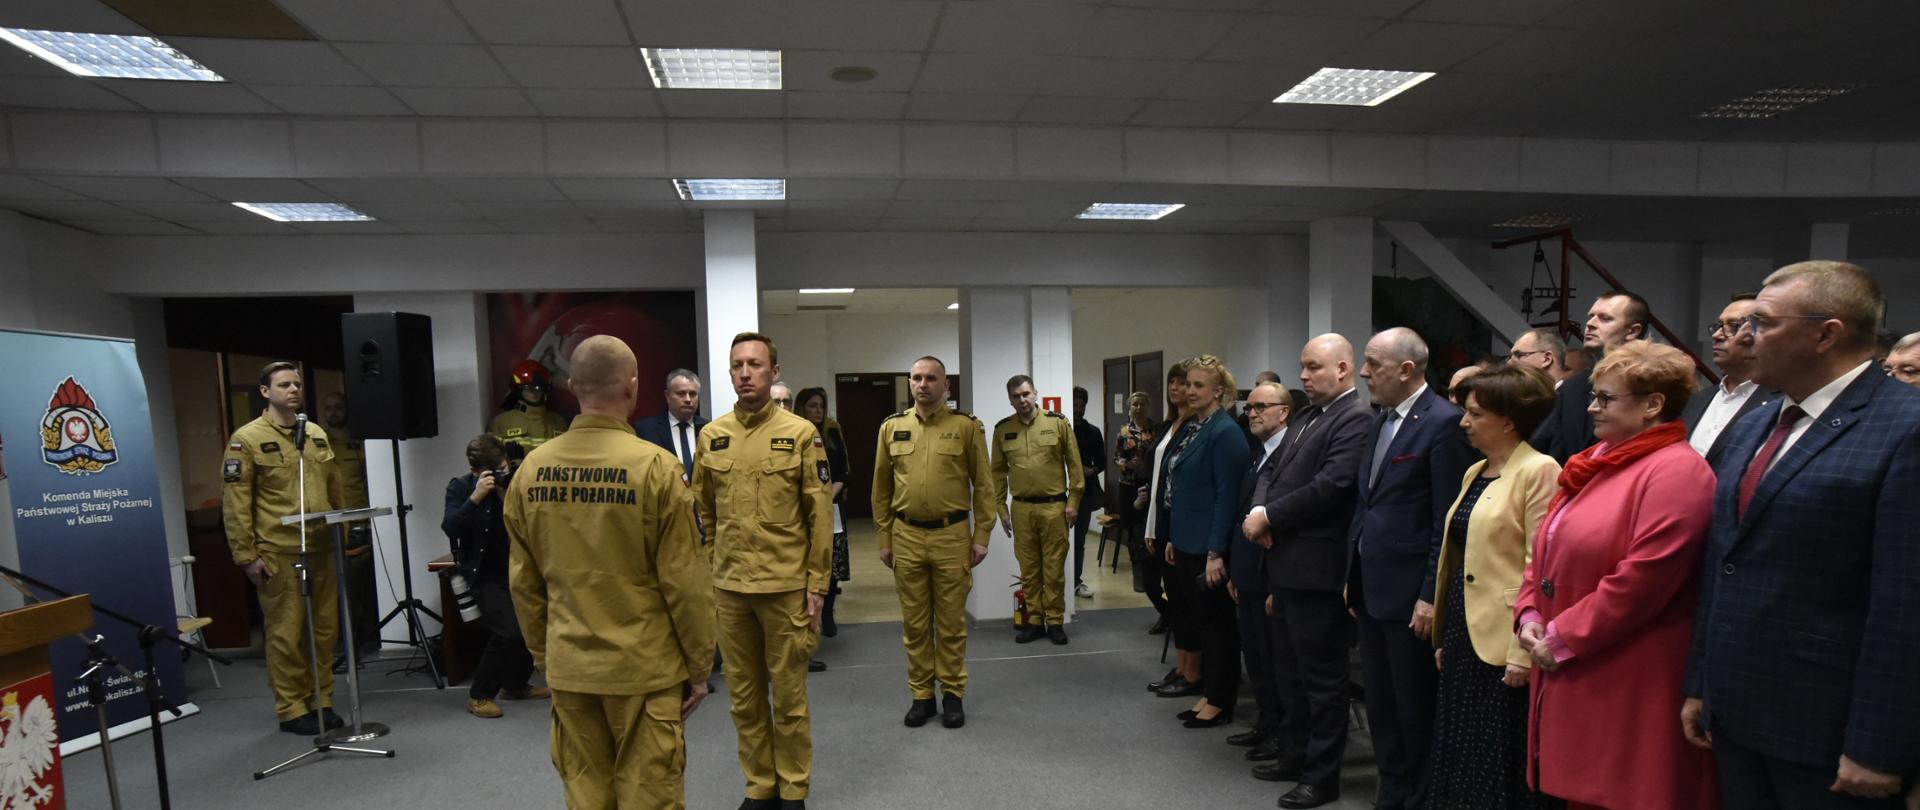 Zdjęcie wykonane w pomieszczeniu Komendy Miejskiej Państwowej Straży Pożarnej w Kaliszu. Na zdjęciu widać druhów OSP w umundurowaniu wyjściowym, funkcjonariuszy PSP w umundurowaniu wyjściowym oraz zaproszonych gości